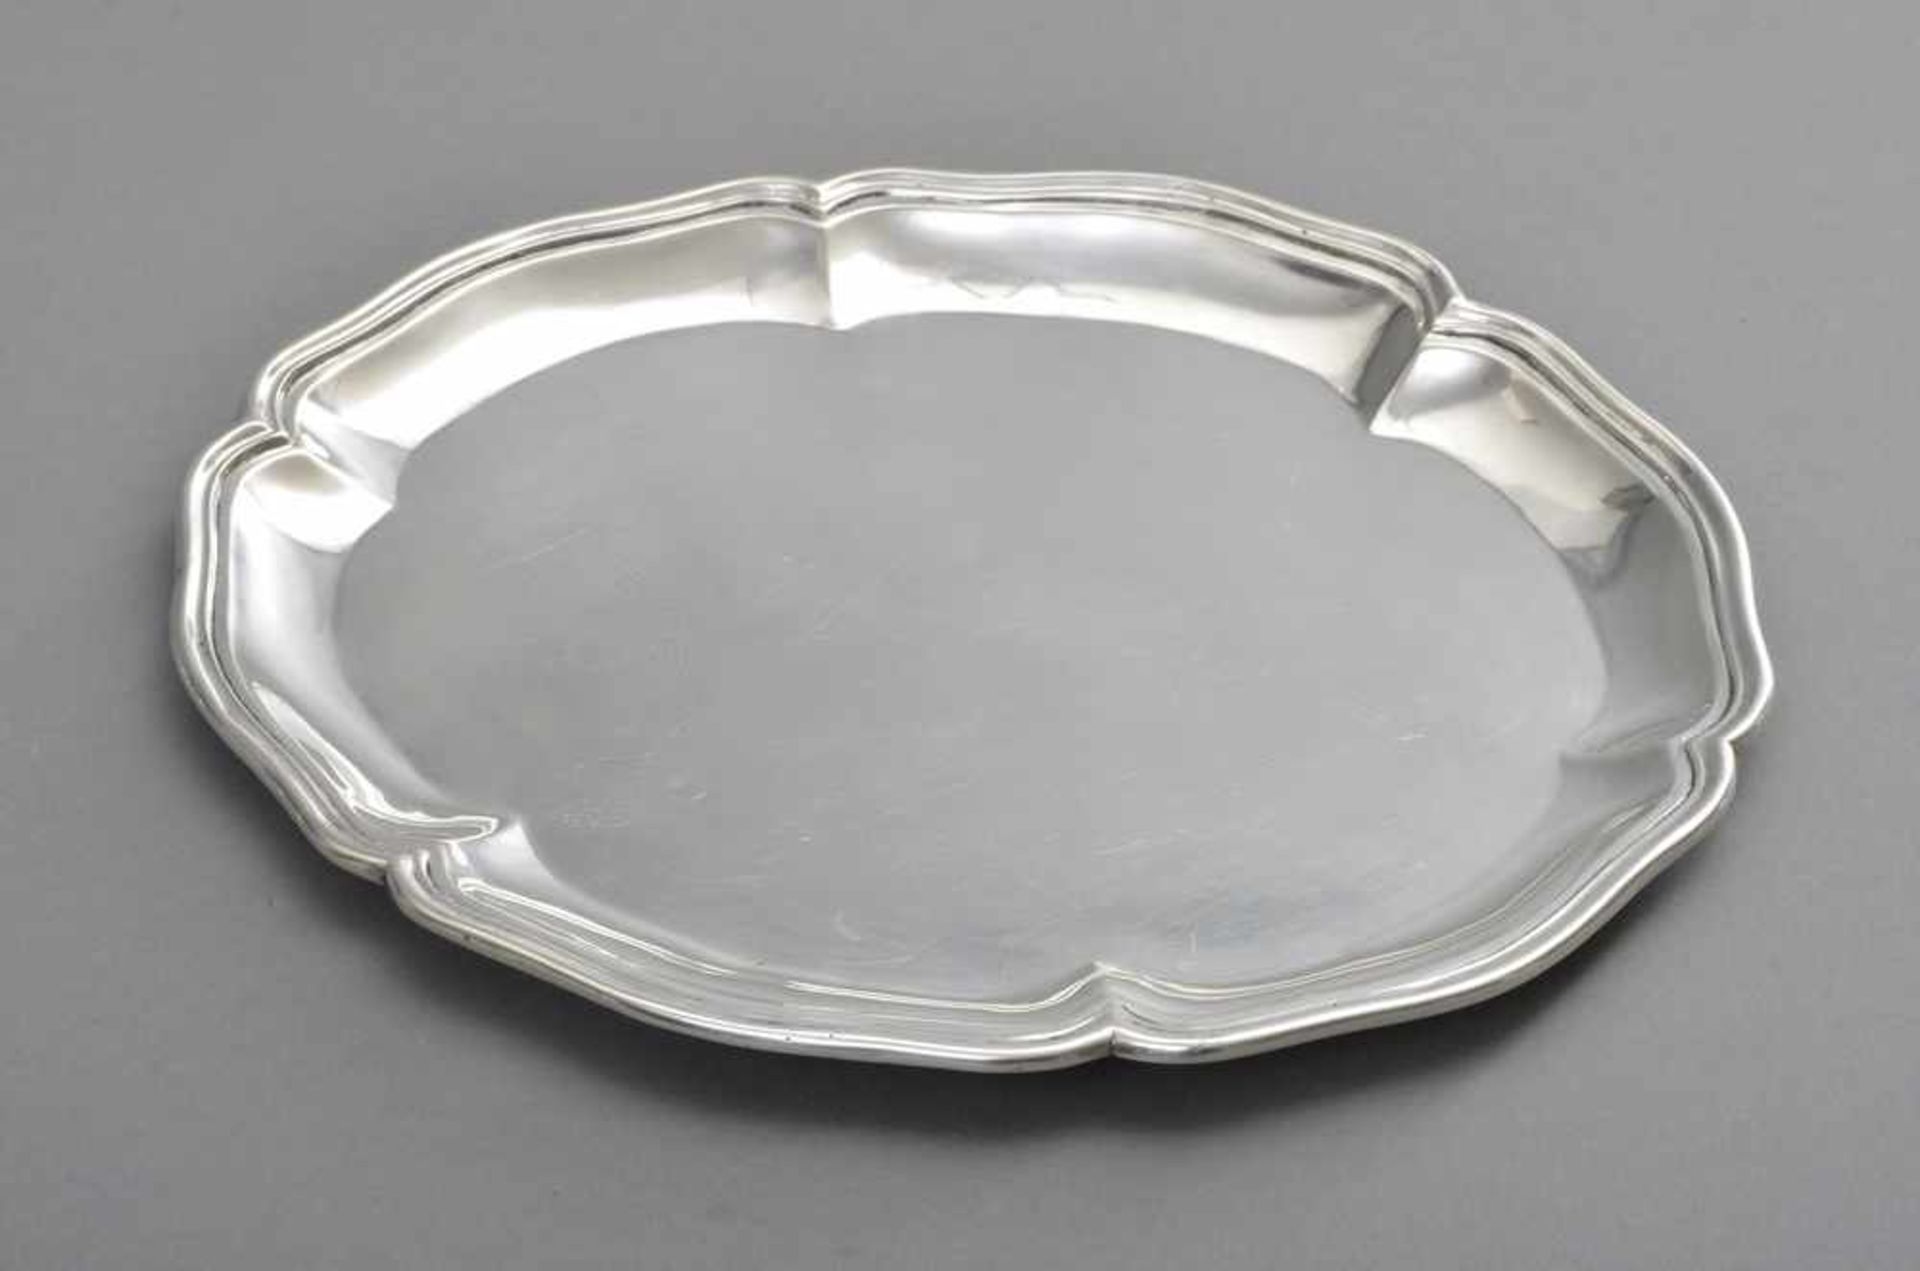 Kleines ovales Tablett mit geschweiftem Rand, Ferd C. Henzler, Hanau, Silber 800, 180g, 22x18cm